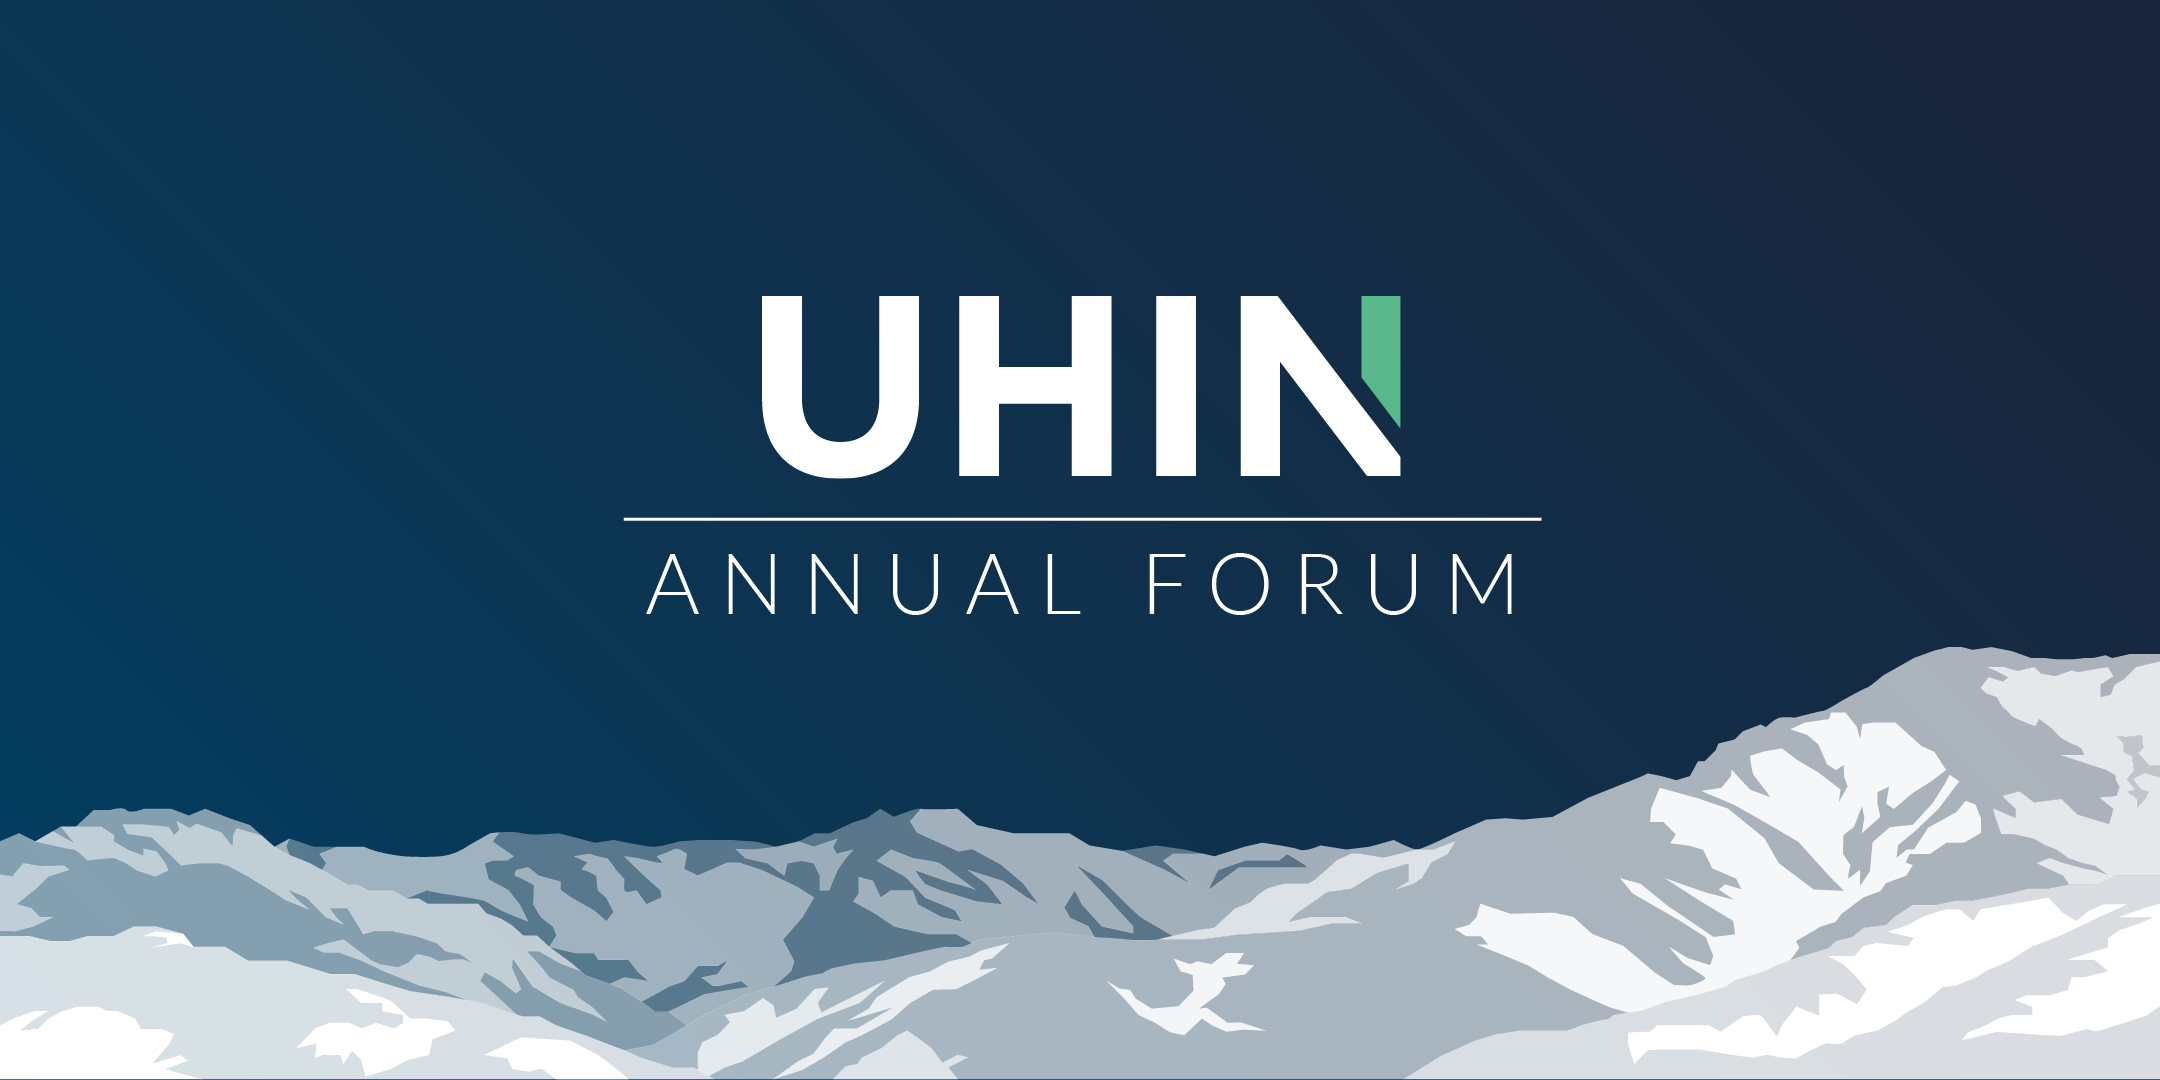 UHIN Annual Forum 2020